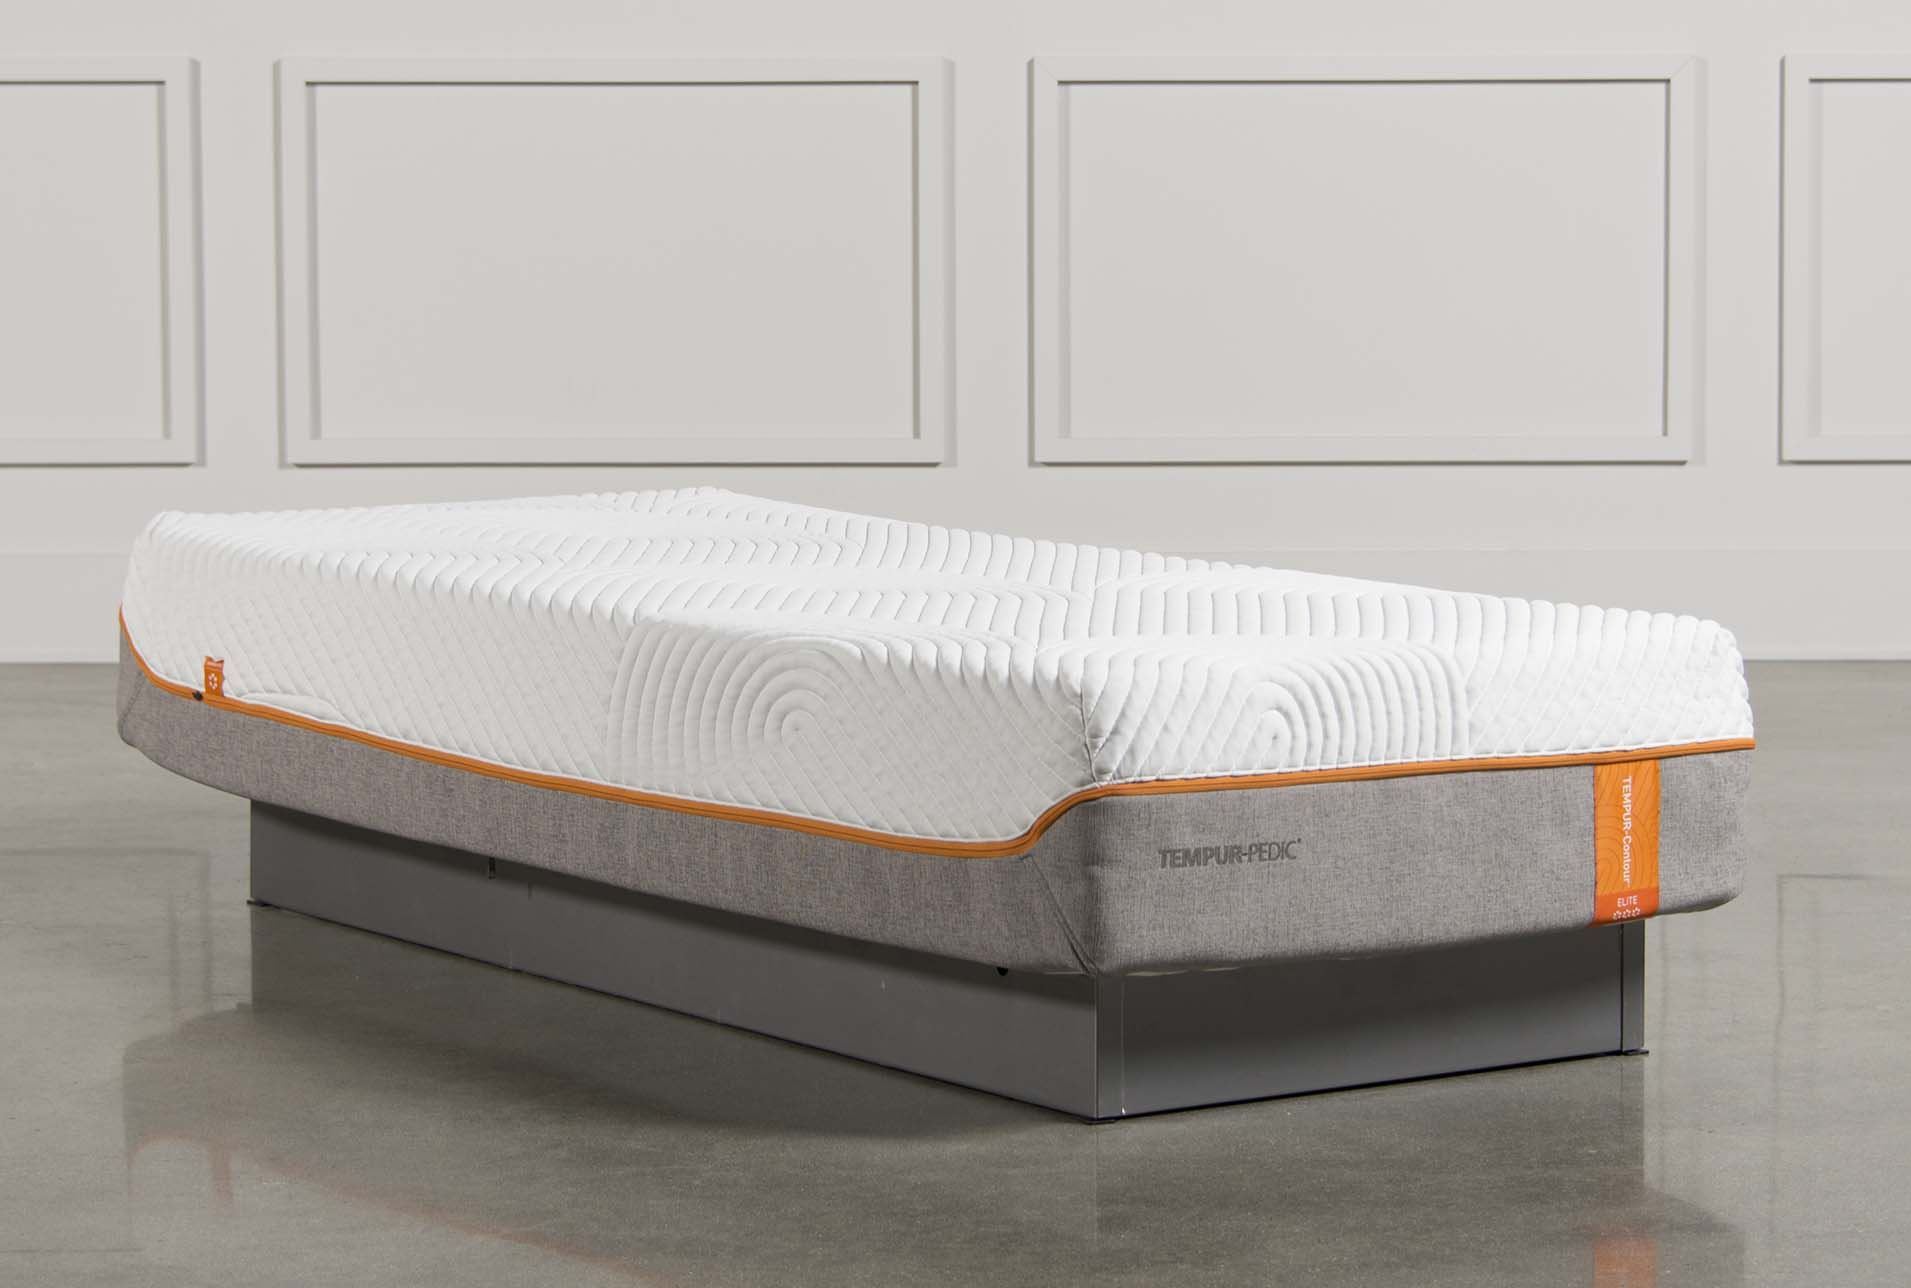 68 inch long mattress